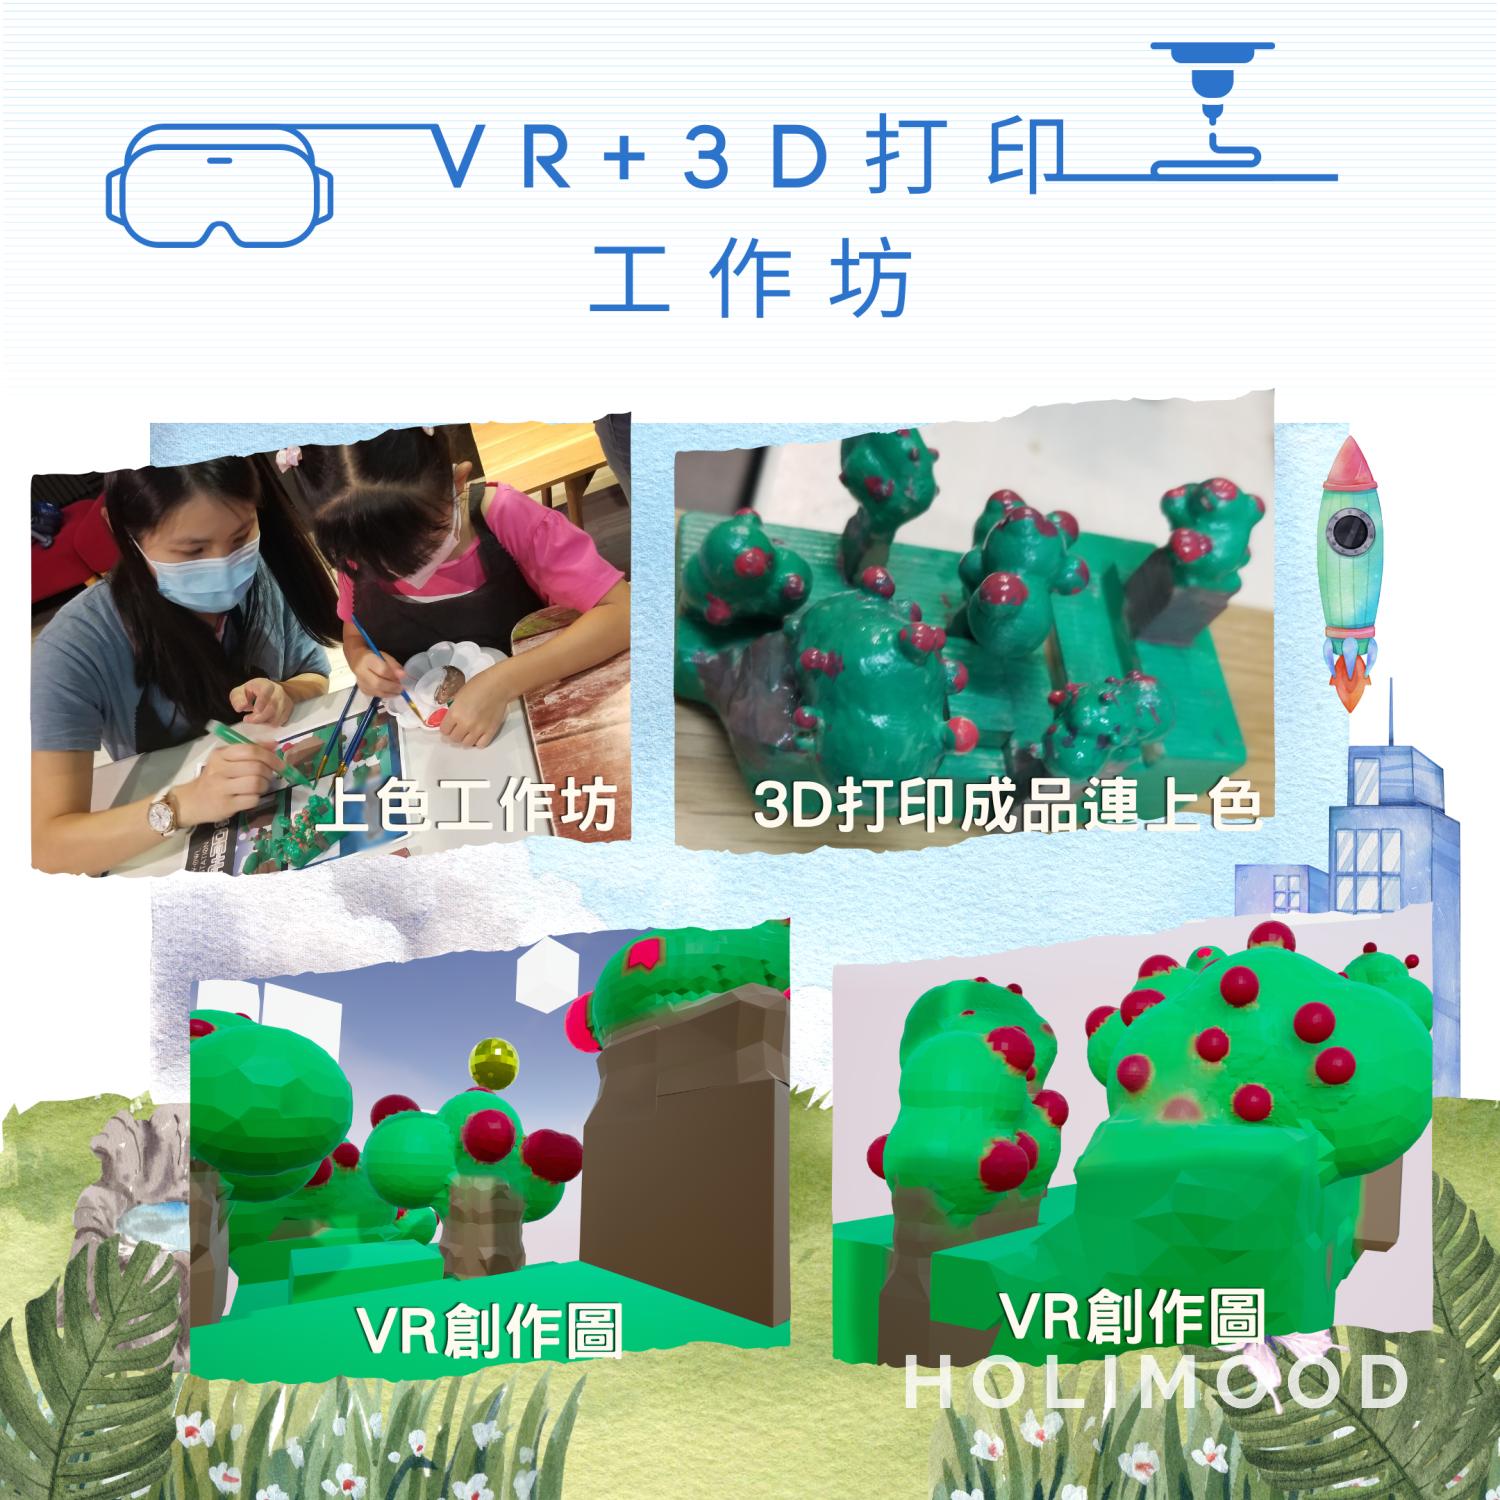 V-Owl Station VR Party VR+3D打印工作坊 5